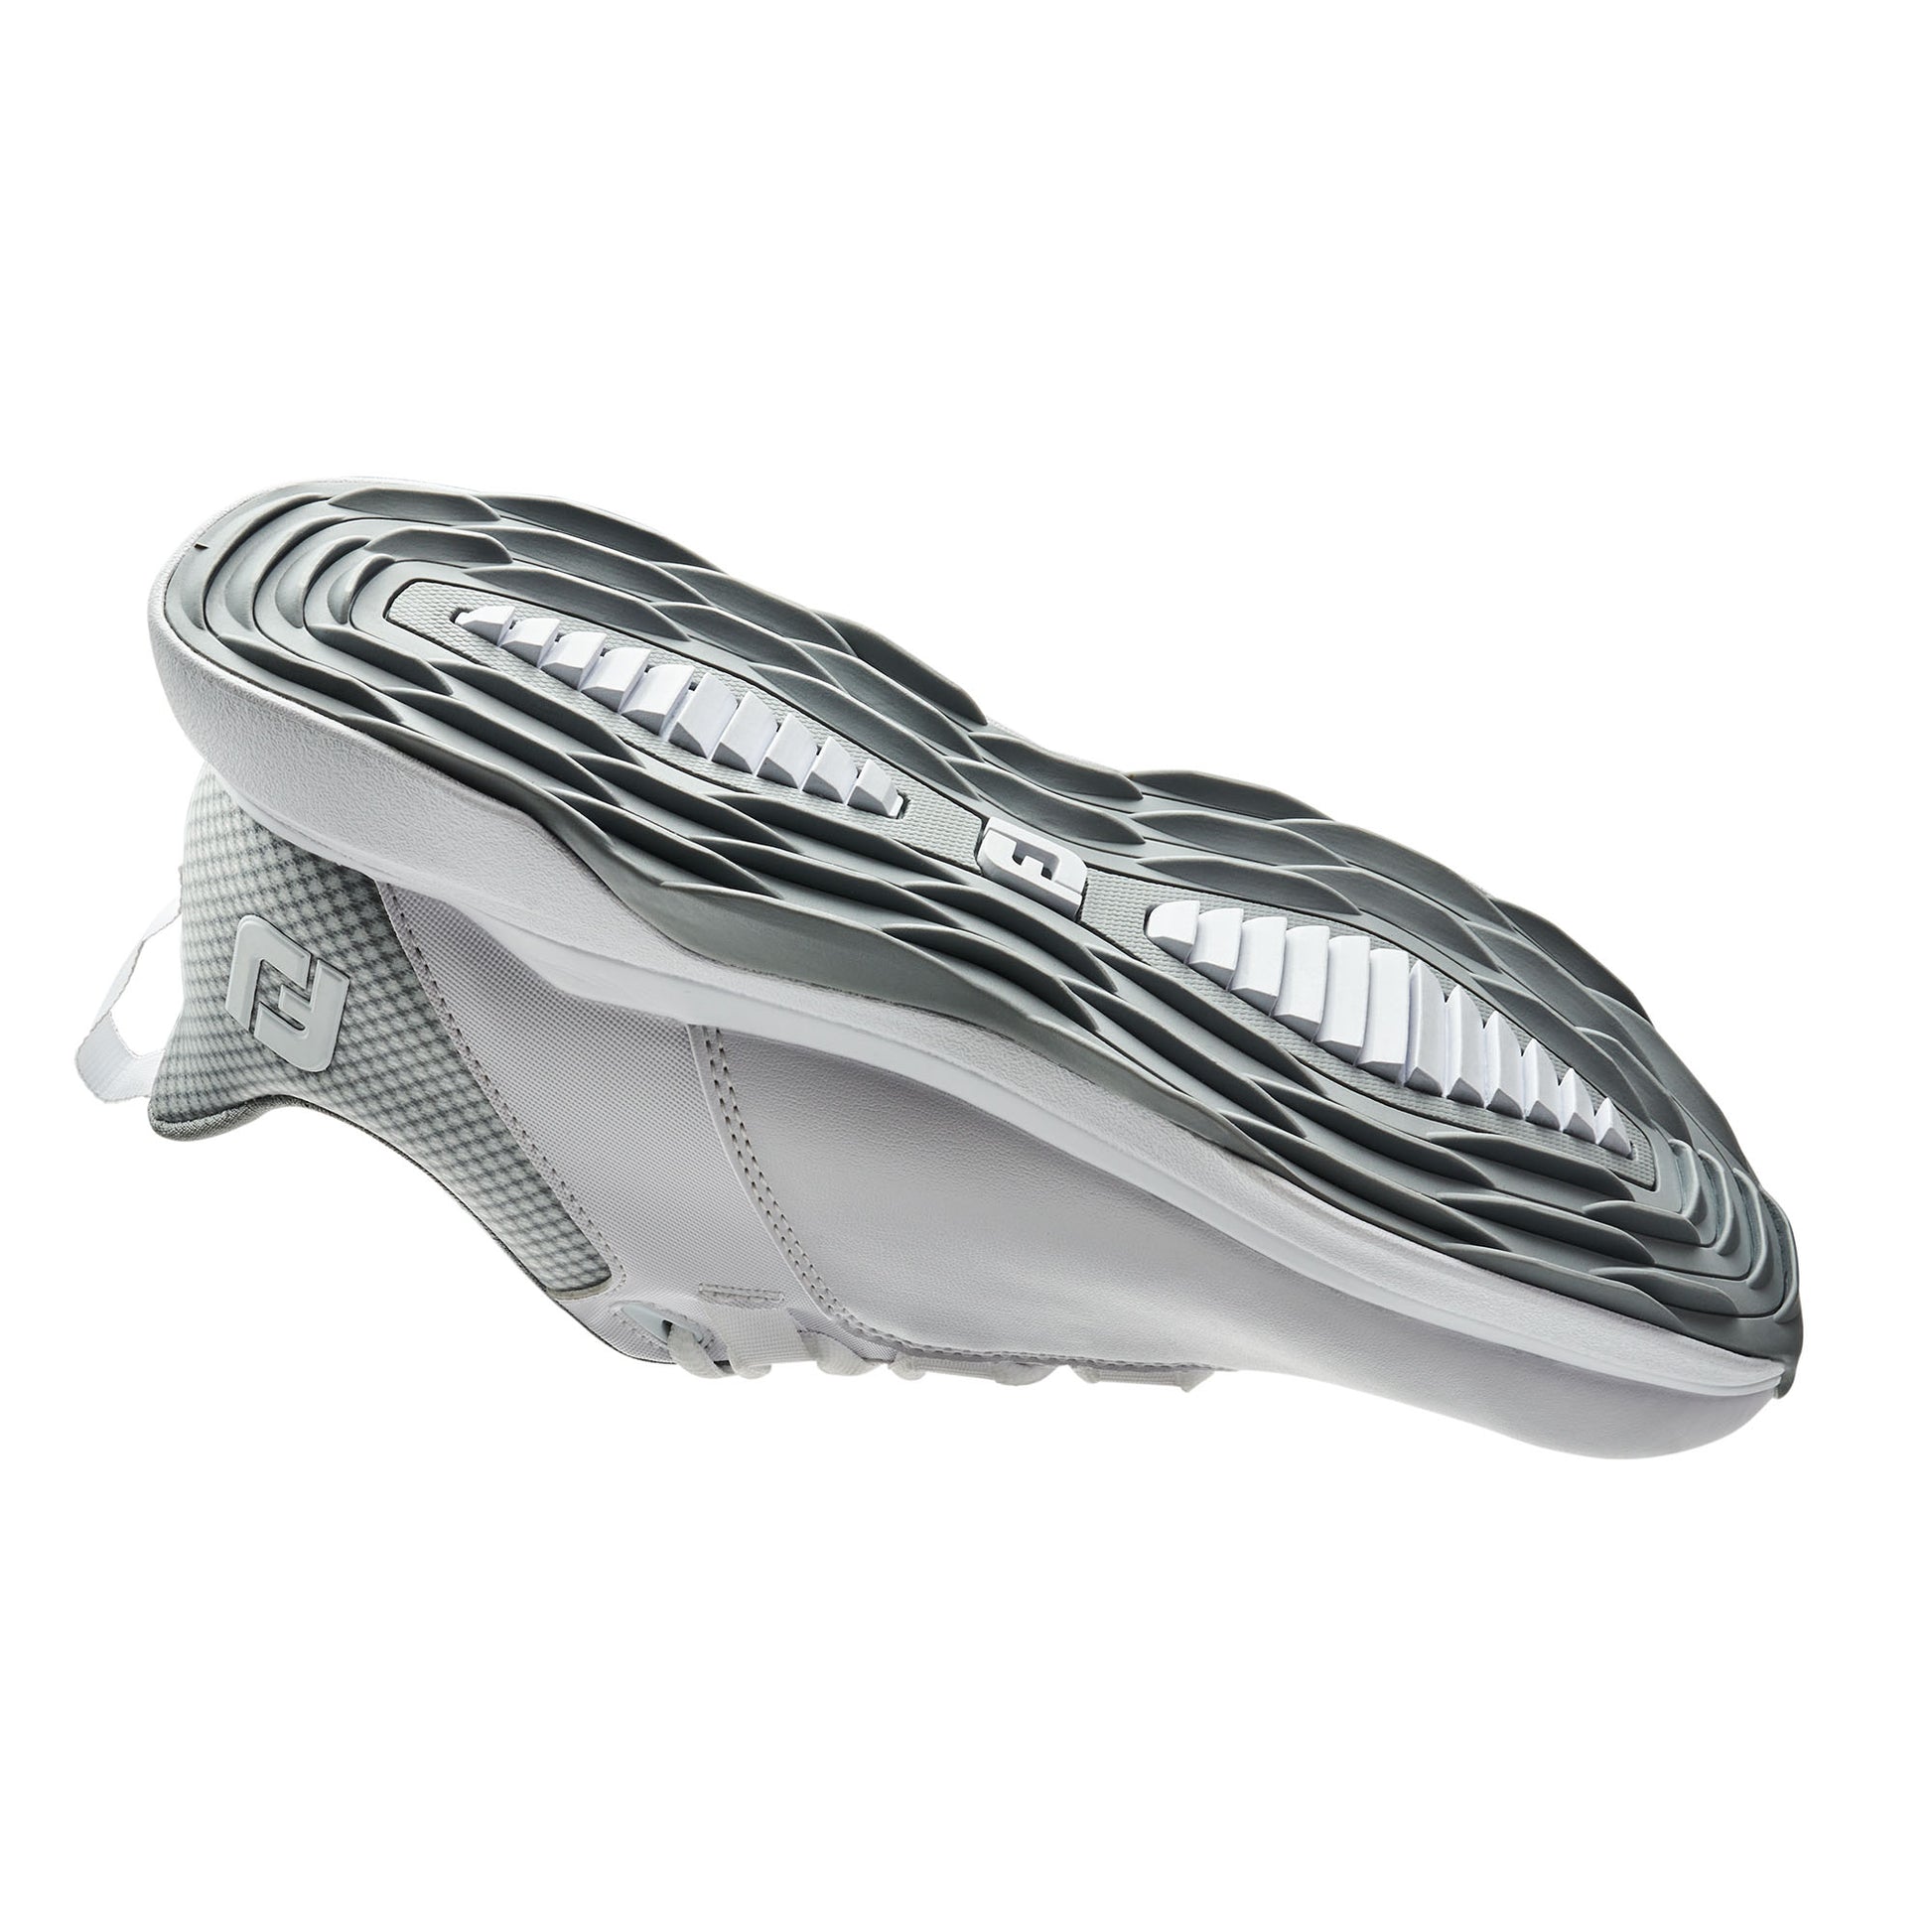 FootJoy Women's Wide Fit ProLite Golf Shoes in White, Grey & Light Grey